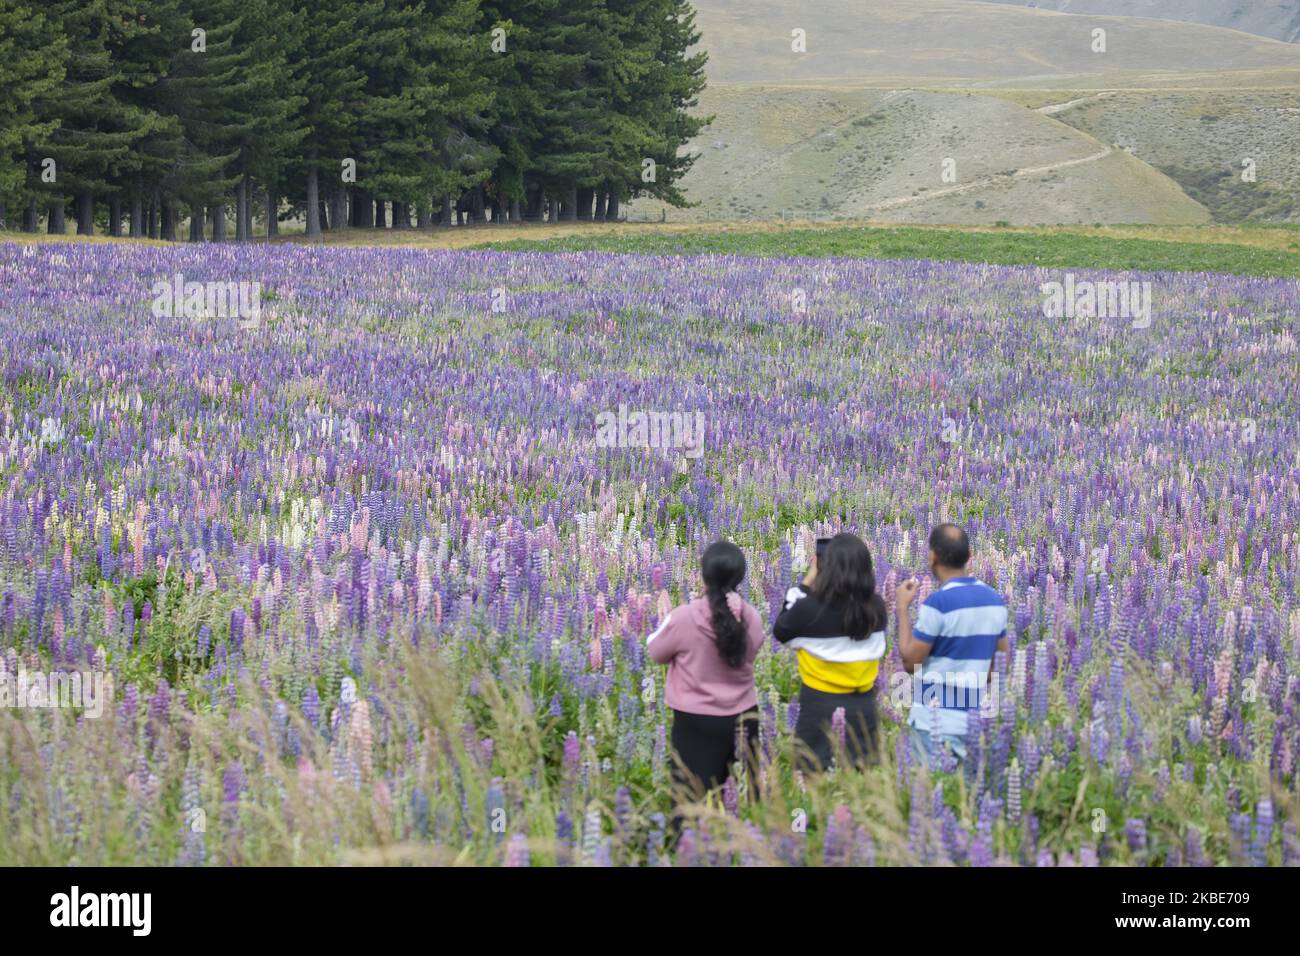 Am 10. Januar 2020 fotografieren Besucher auf bunten Lupinenfeldern in Tekapo,Â Mackenzie Country,Â auf der zentralen Südinsel von New ZealandÂ.Â Tekapo ist eine der beliebtesten Touristenattraktionen Neuseelands. Jeden November beginnen riesige, farbenfrohe Felder mit Lupinenblumen entlang der Seeufer, Bäche, Kanäle und Autobahnen der Mackenzie Region in Neuseeland aufzutauchen. Lupinen sind jedoch eine nicht-einheimische Blumenart und verursachen in Neuseeland eine Reihe von ofÂ Problemen, da sie sich schnell ausbreiten und einheimische Flora und Fauna aus ihren Lebensräumen drängen. Â Â (Foto by Sanka Vidanagama/NurPhoto) Stockfoto